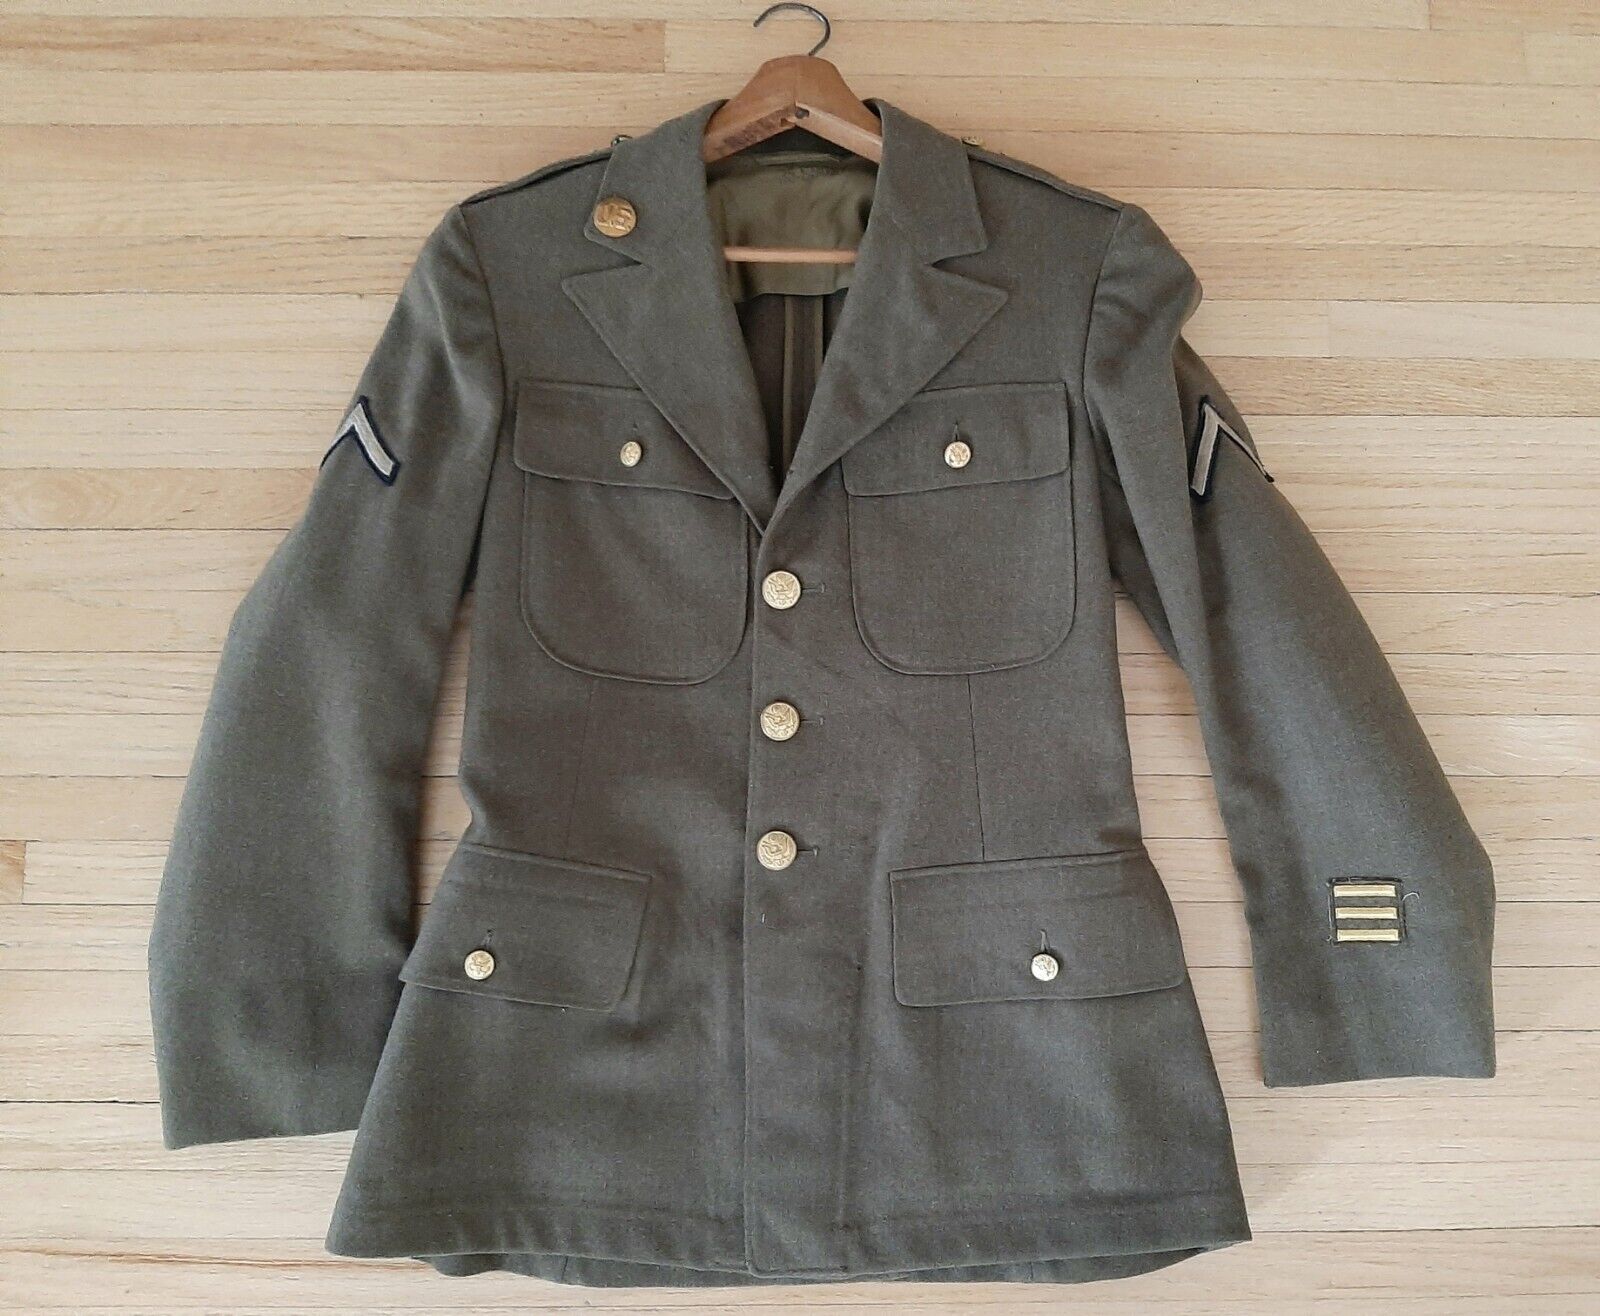 WW 2 1944 Army Winter Wool Dress Uniform Jacket 35 Short (soldier info) + Belt 